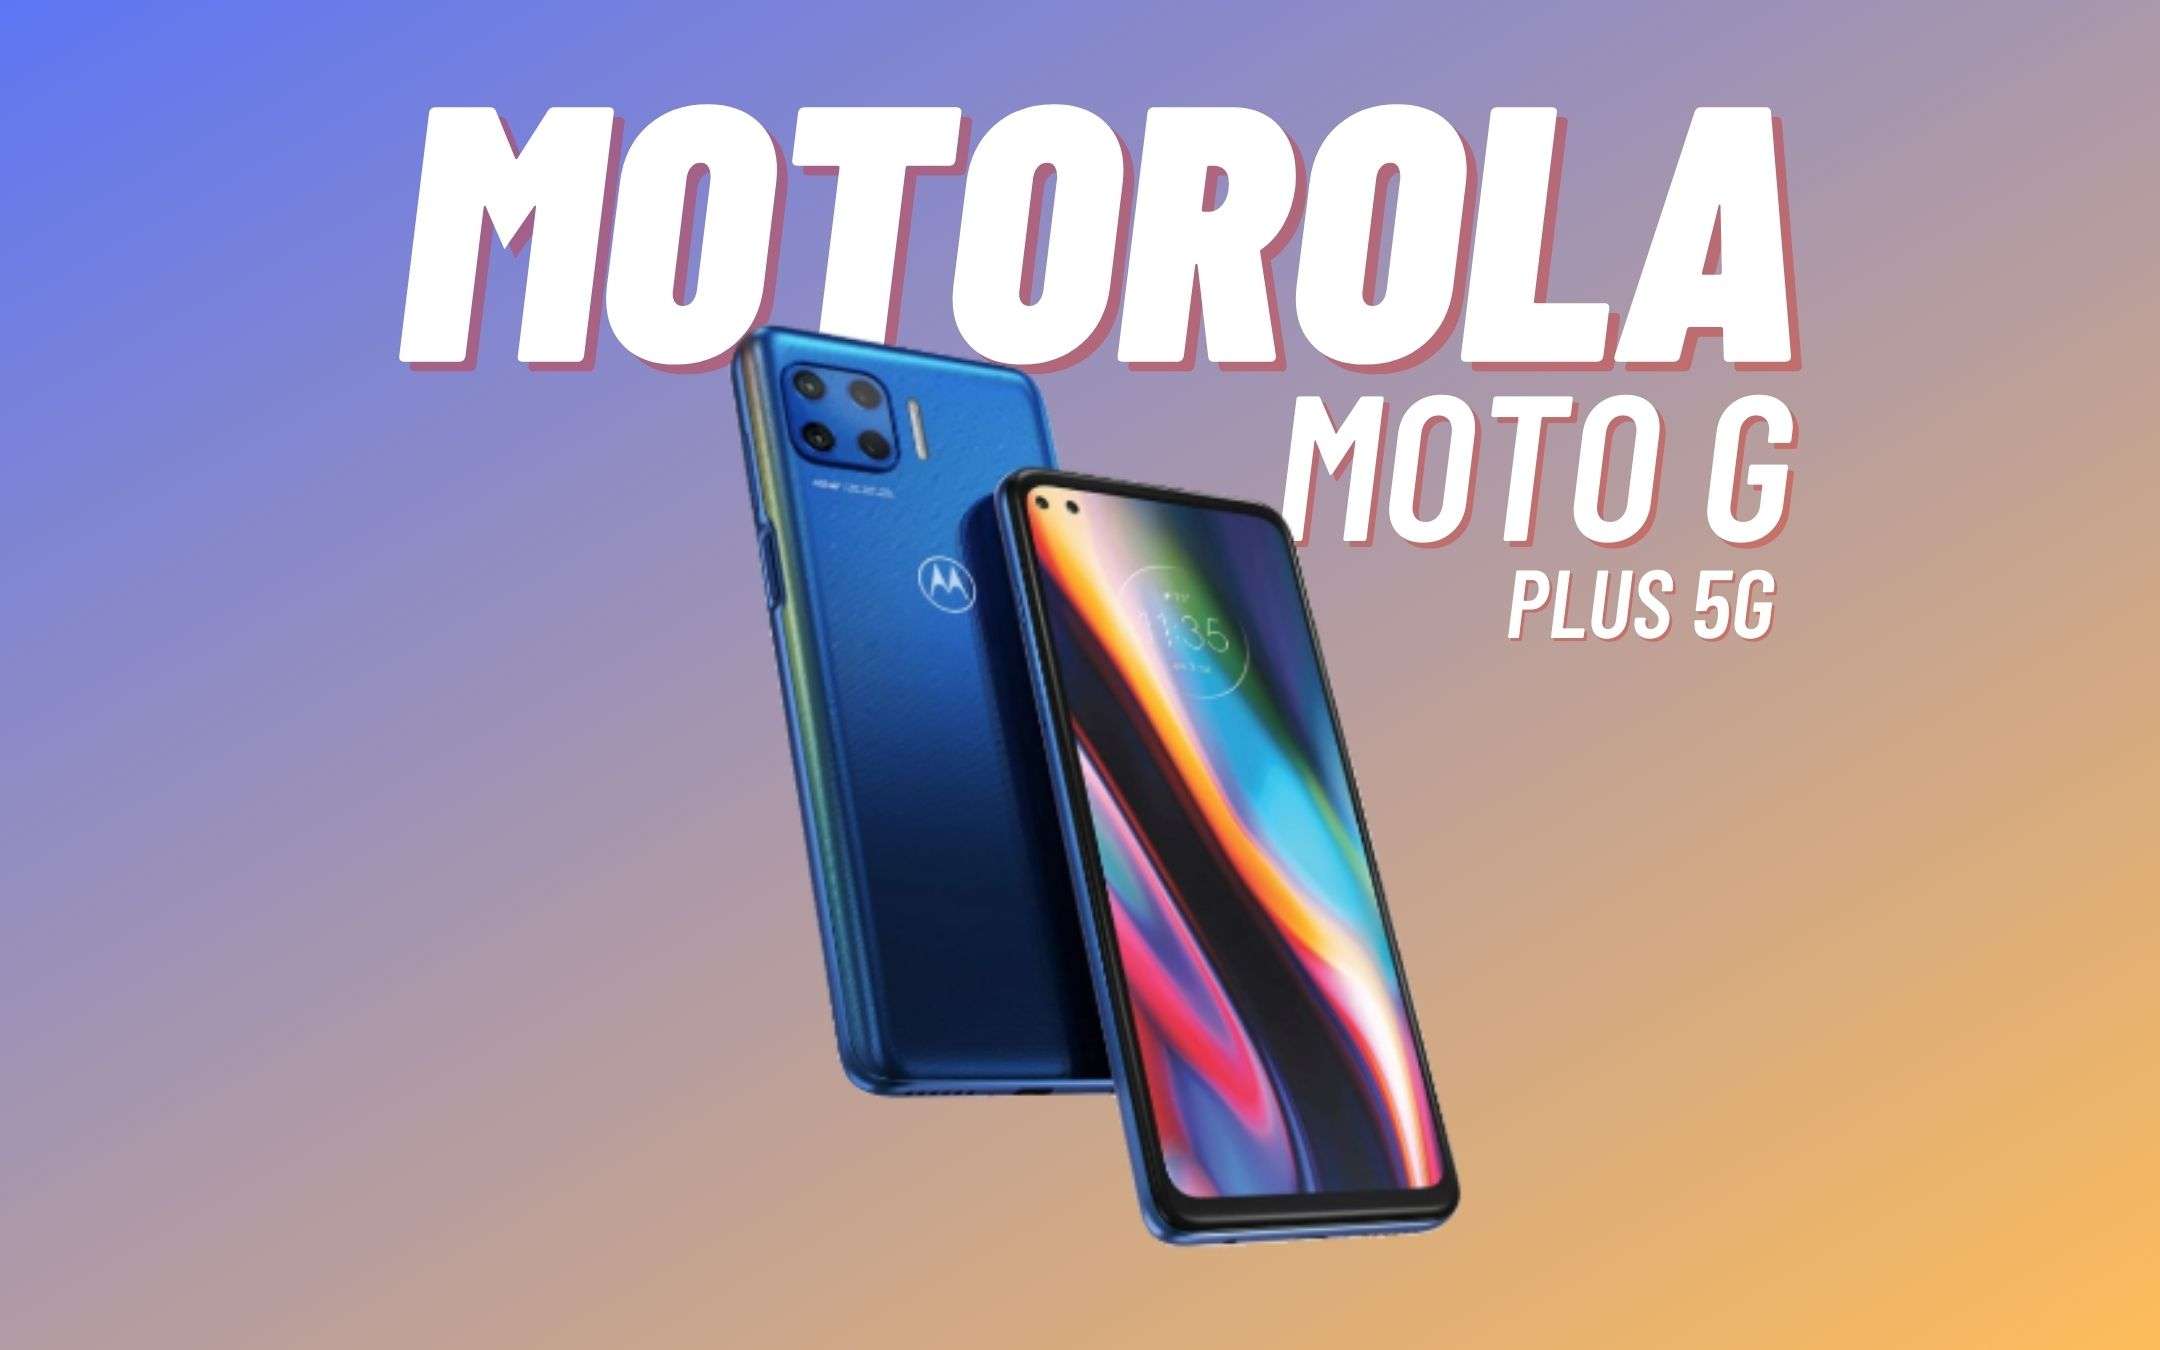 Aggiornate il Motorola Moto G Plus 5G ad Android 11